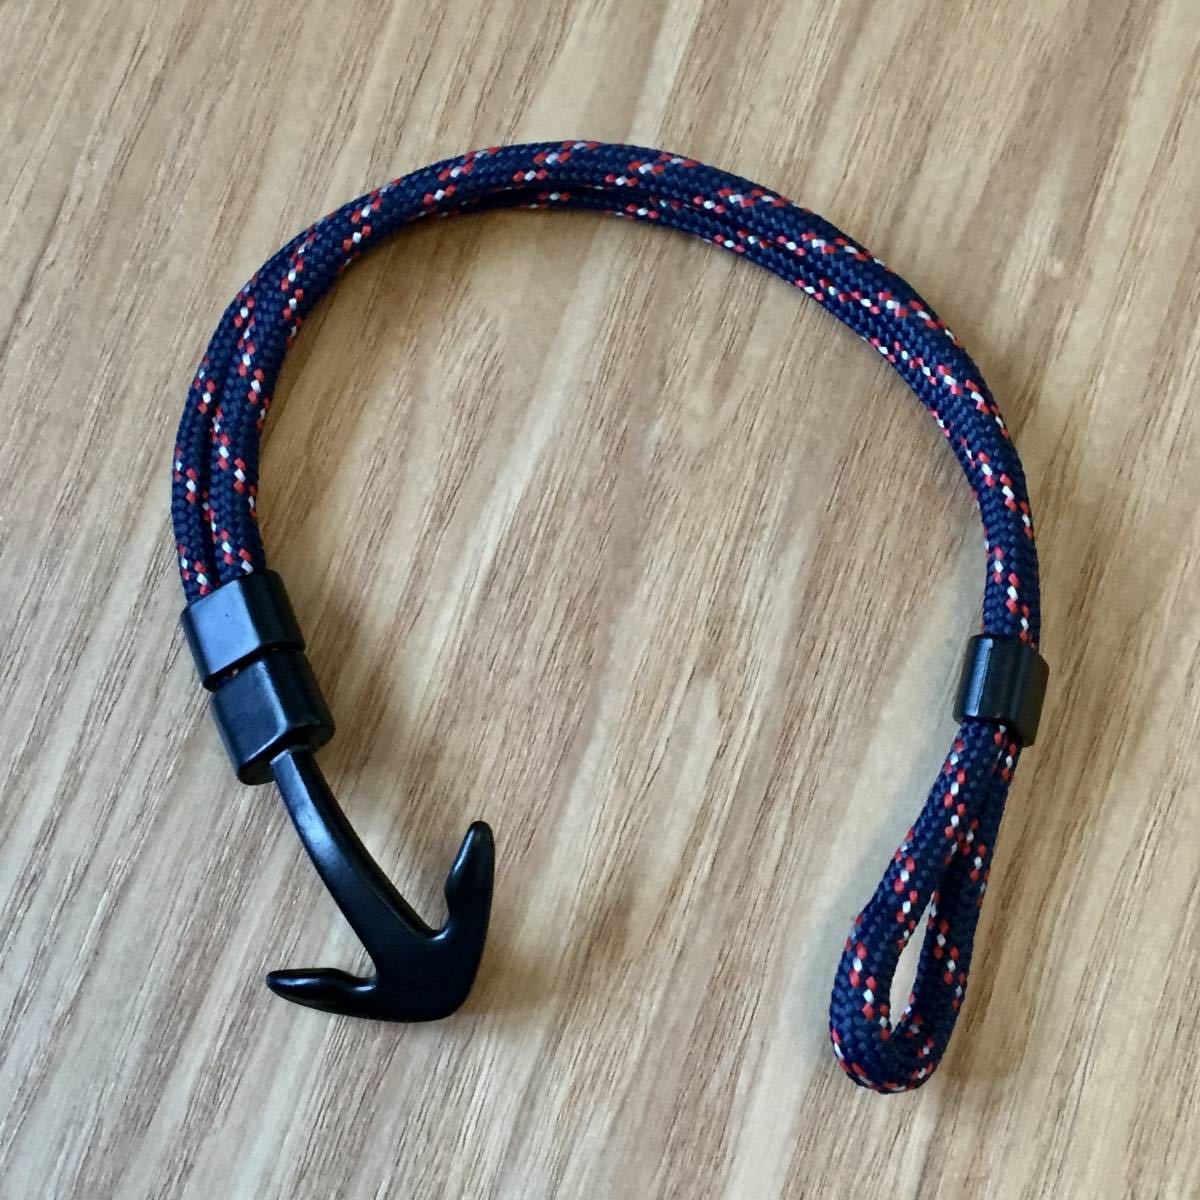  не использовался URBAN RESEARCH Anchor Rope Bracelet Urban Research якорь трос браслет . сделано в Японии MADE IN JAPANpala Shute код 